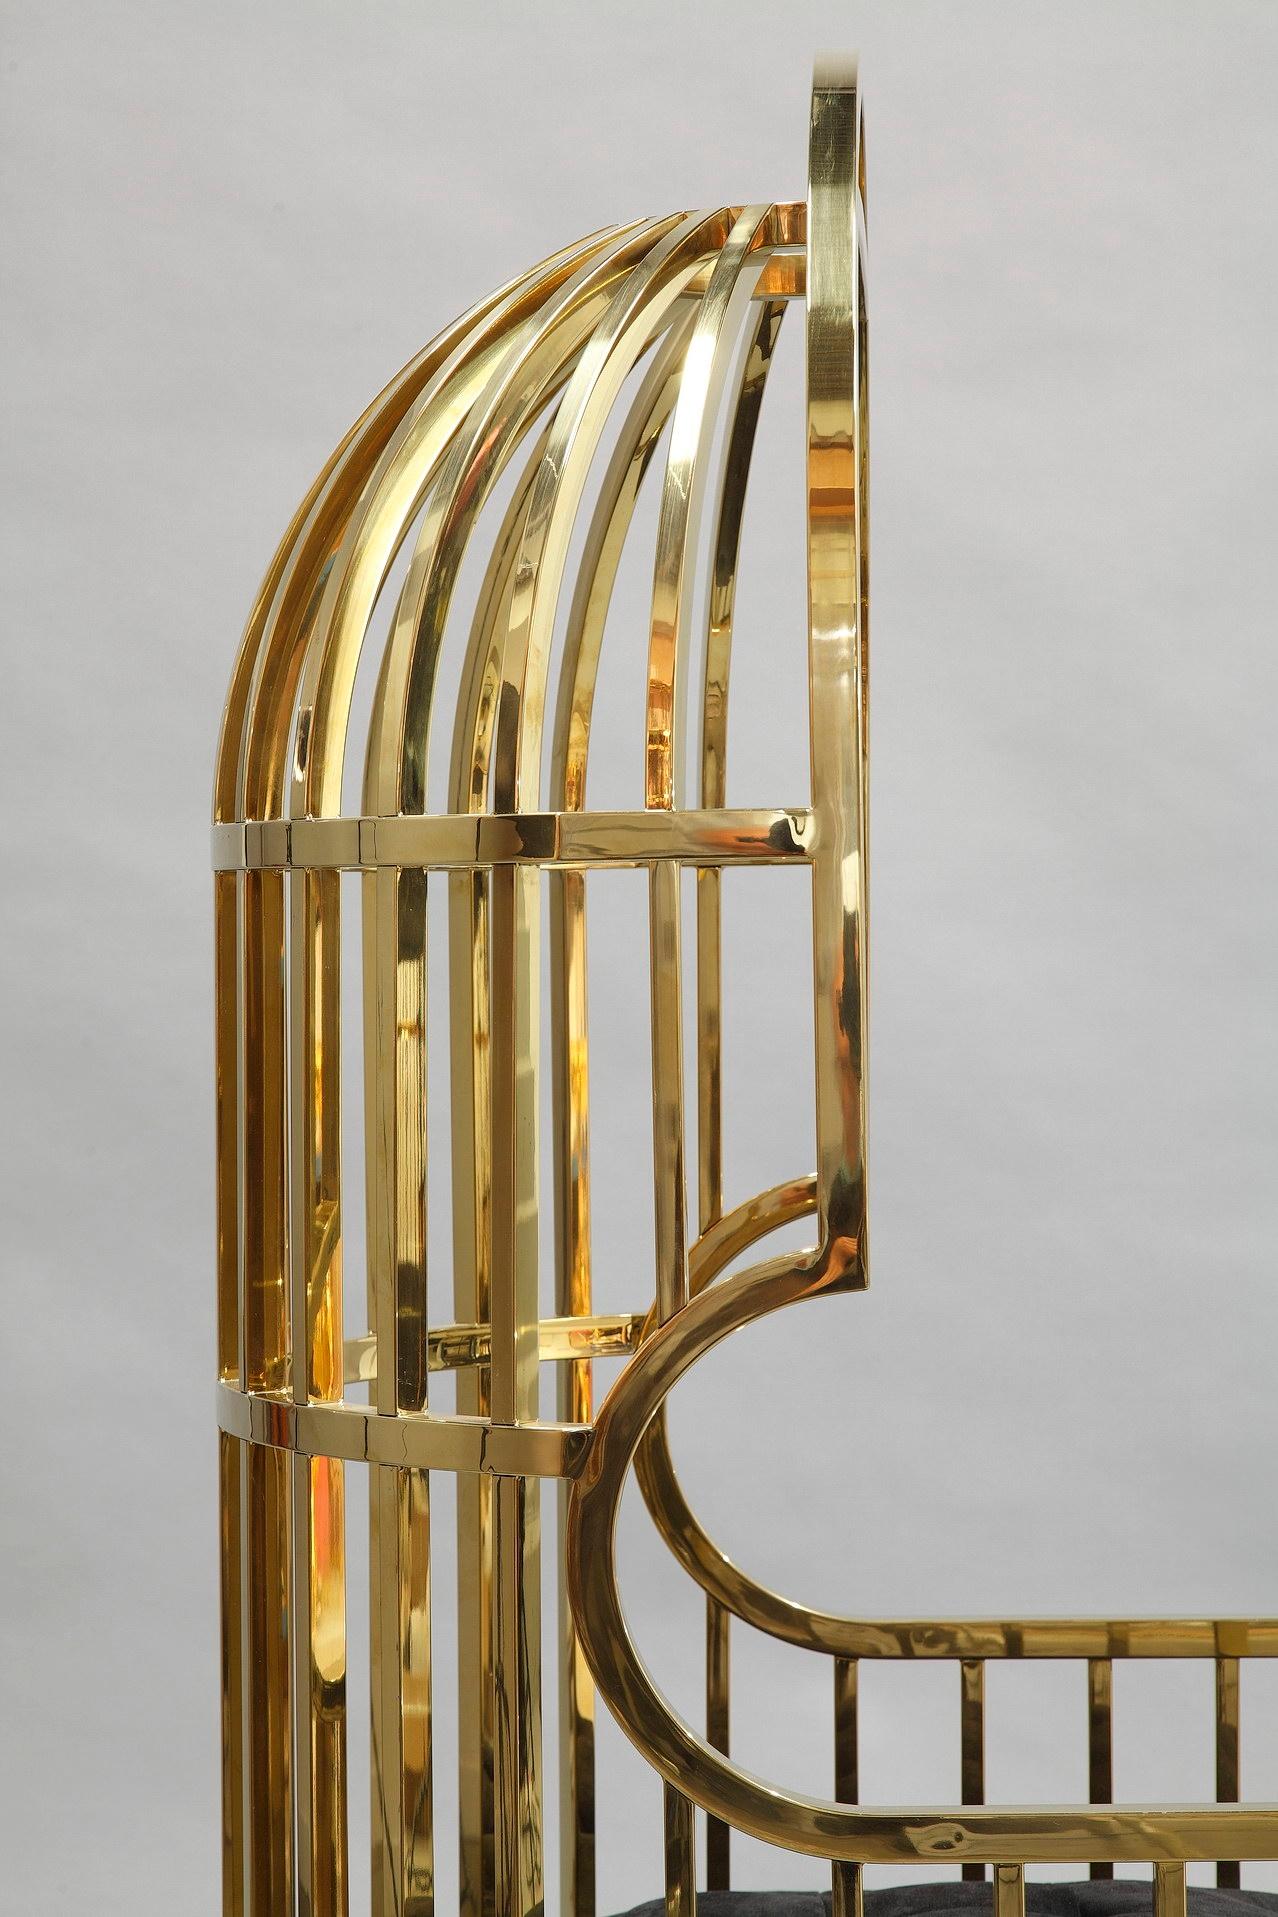 Stainless Steel Eichholtz Bora Bora Birdcage Chairs, Gold